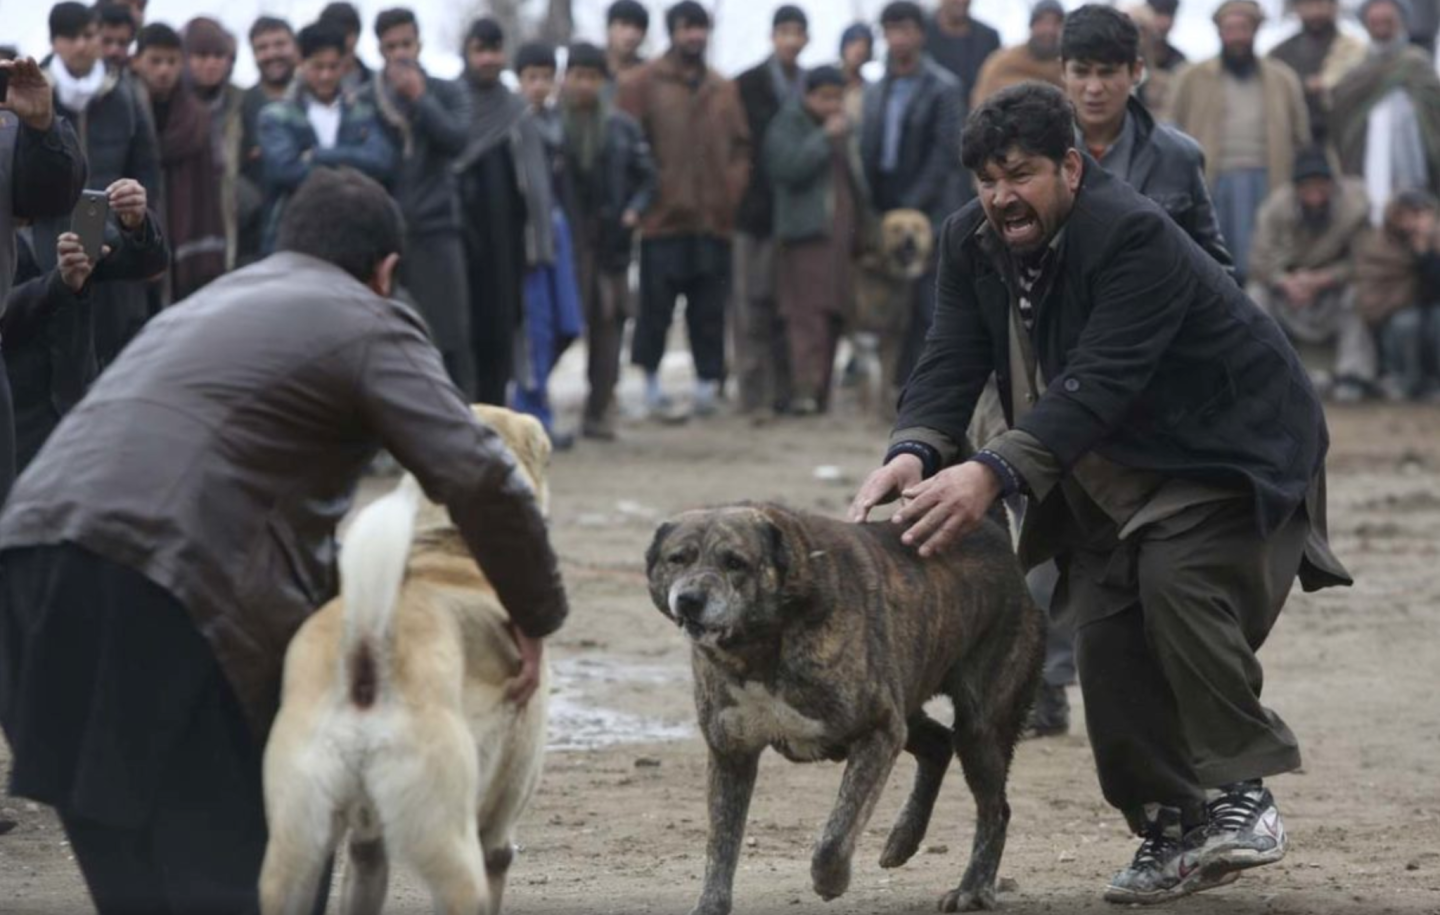 Las peleas de perros son el 'entretenimiento' para centenares de afganos cuyas apuestas pueden llegar a los miles de dólares...